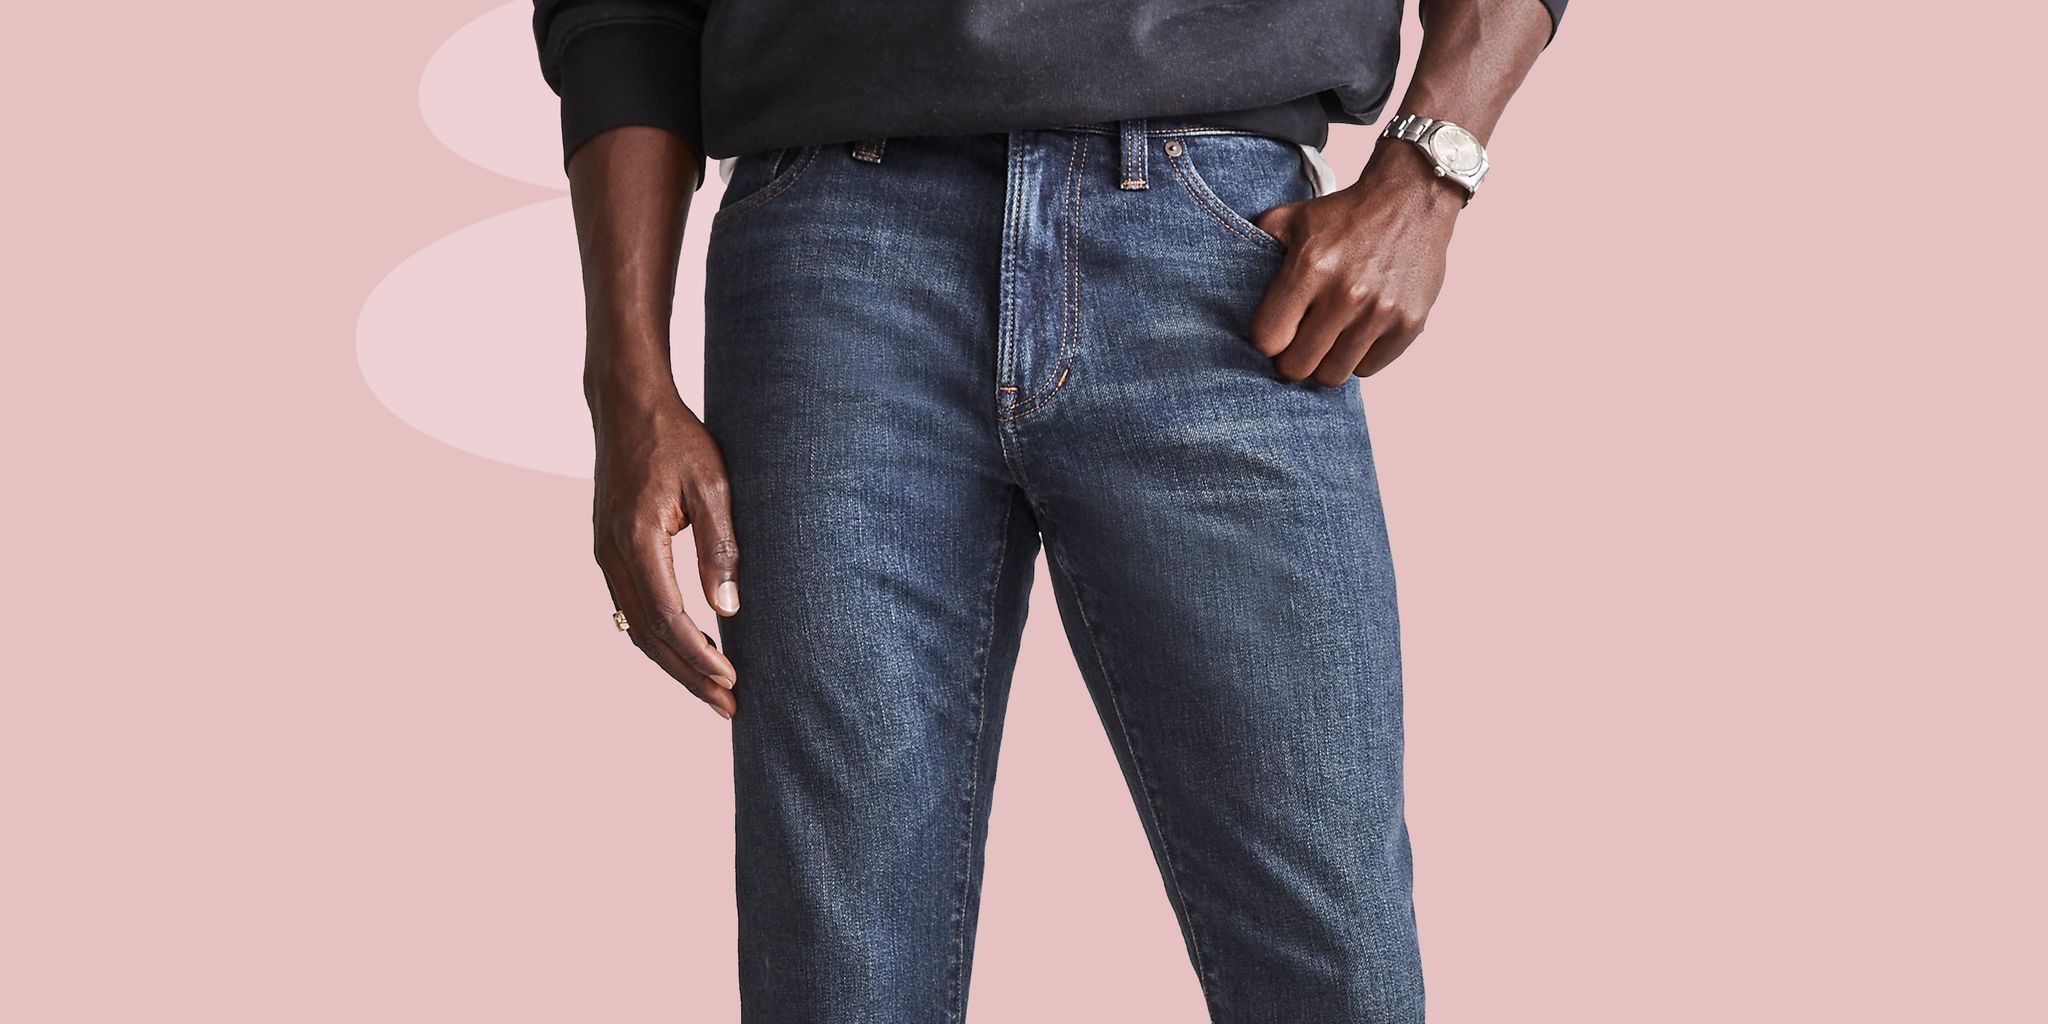 louis vuitton jeans for men - Google Search  Louis vuitton jeans, Louis  vuitton men, Mens pants fashion